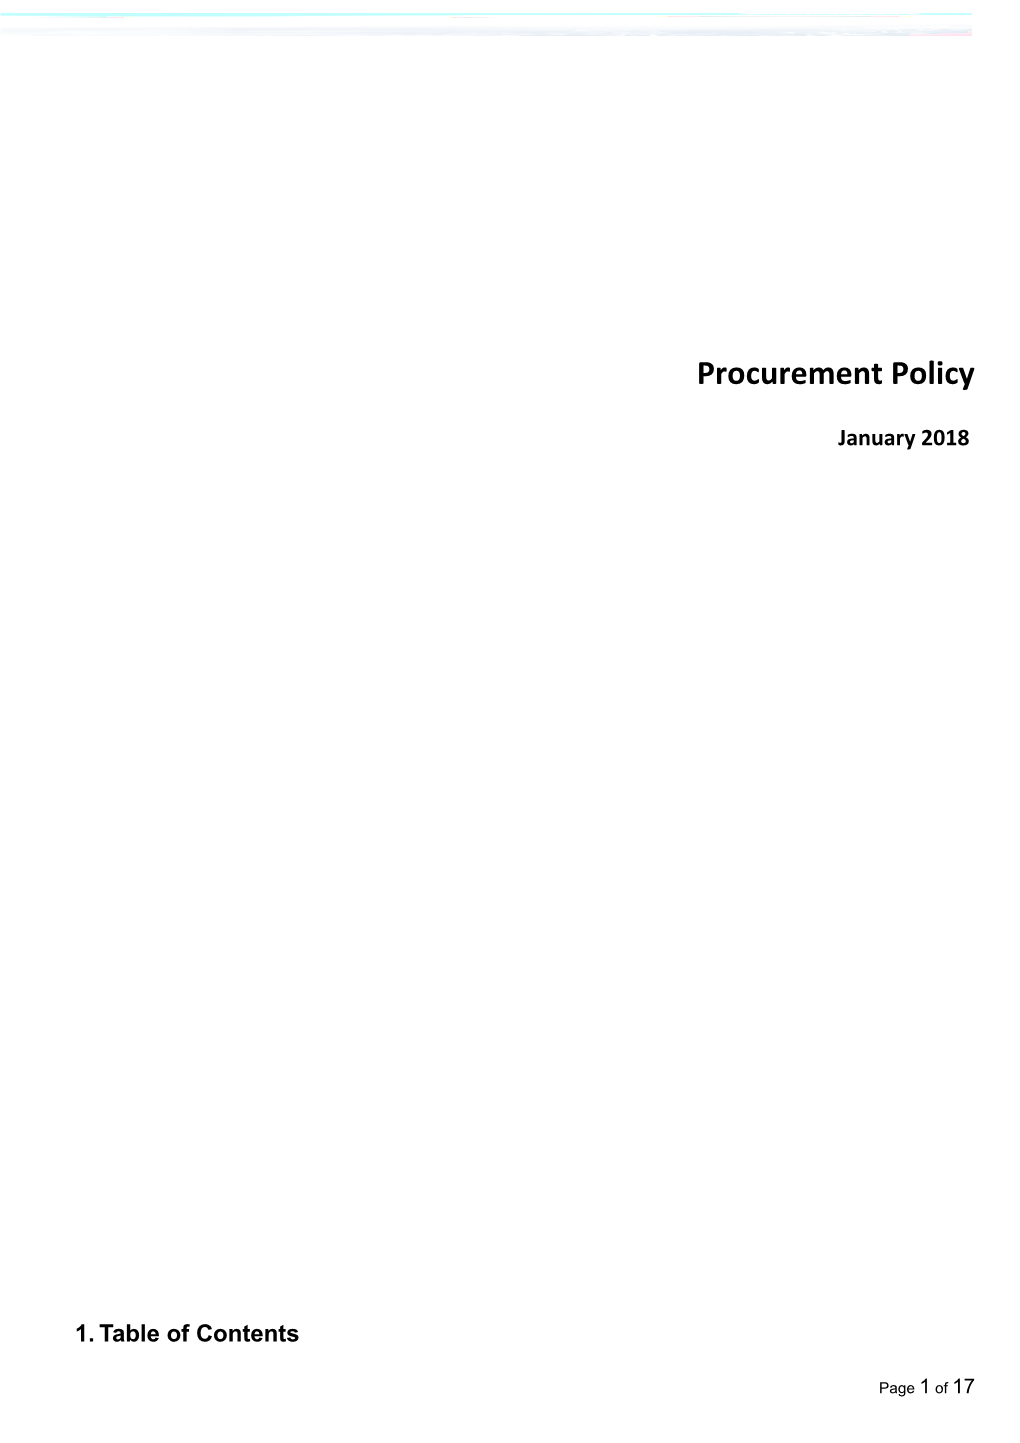 Procurement Policy 2017-2018 Final Public Version